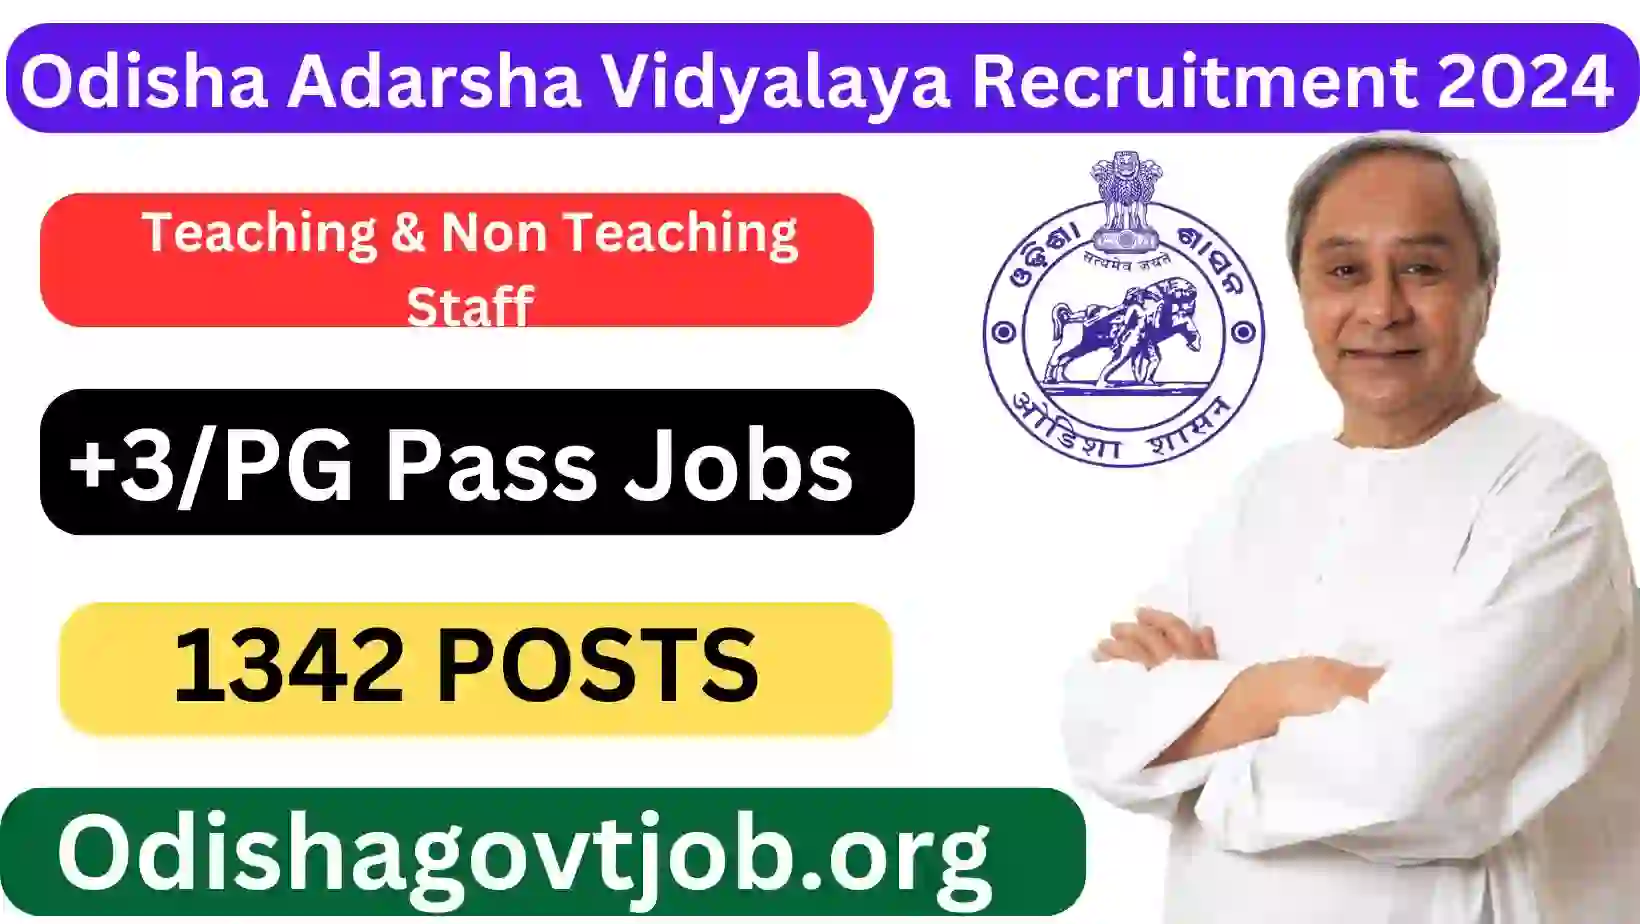 Odisha Adarsha Vidyalaya Recruitment 2024